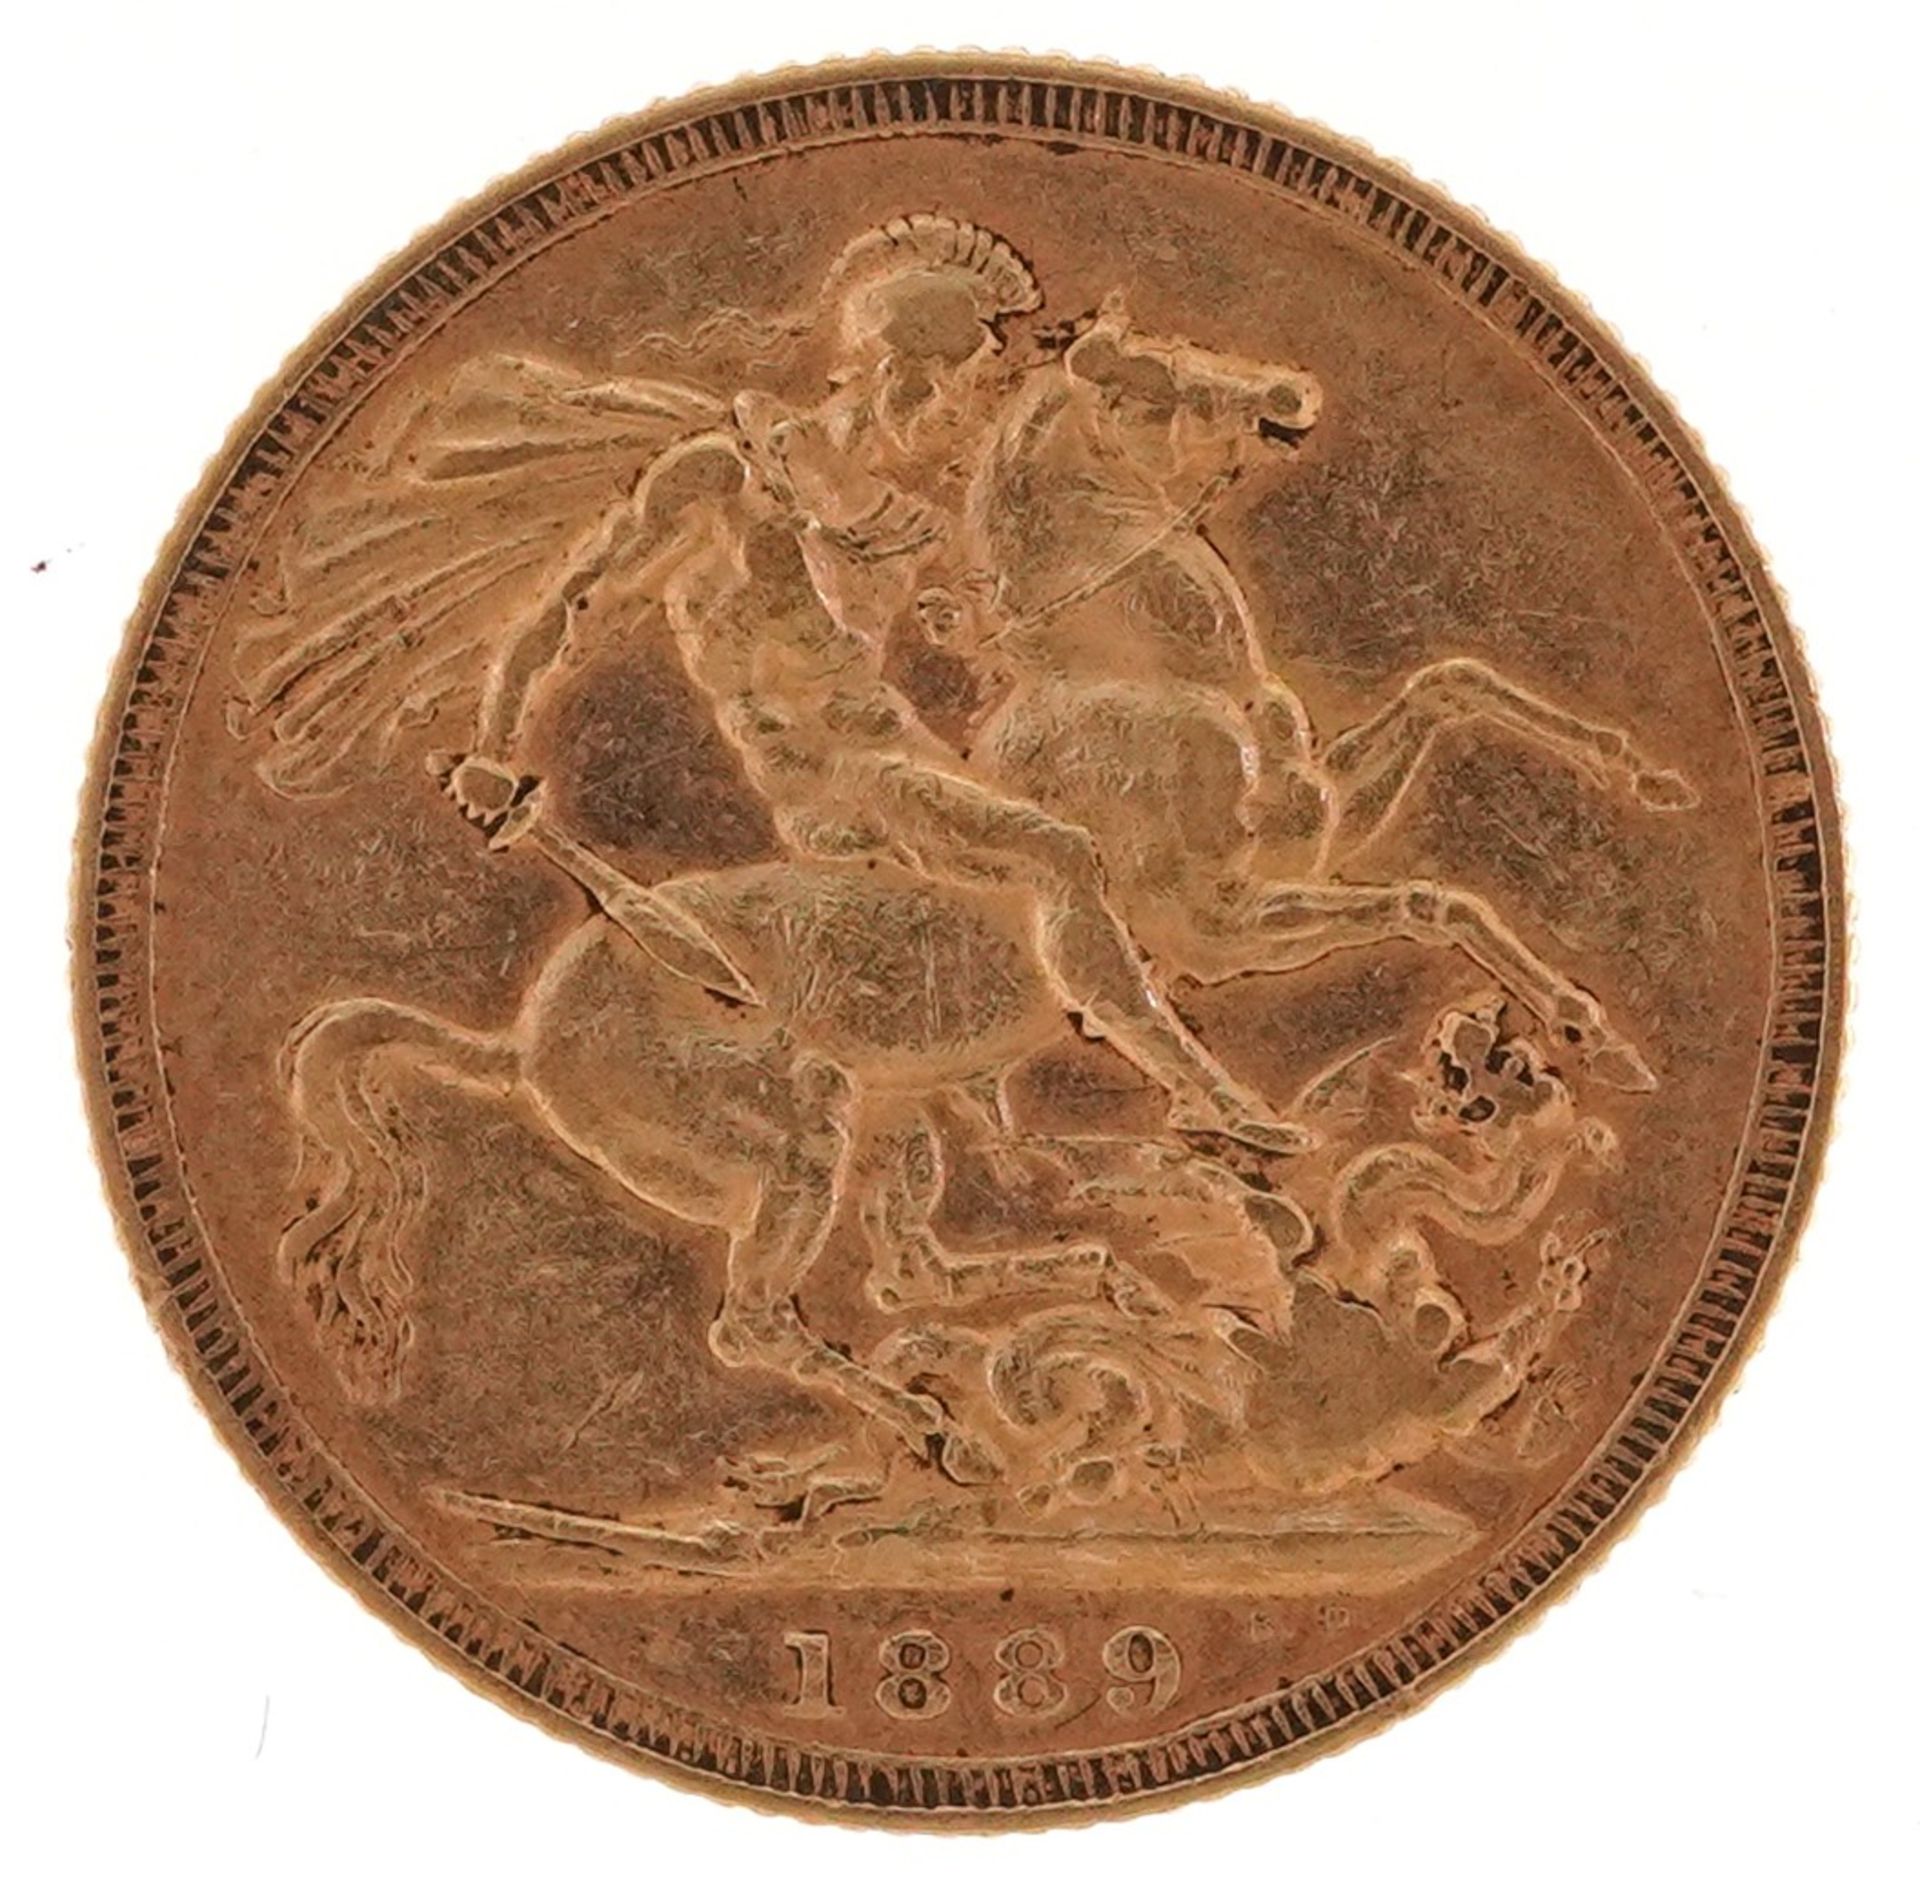 Queen Victoria Jubilee Head 1889 gold sovereign